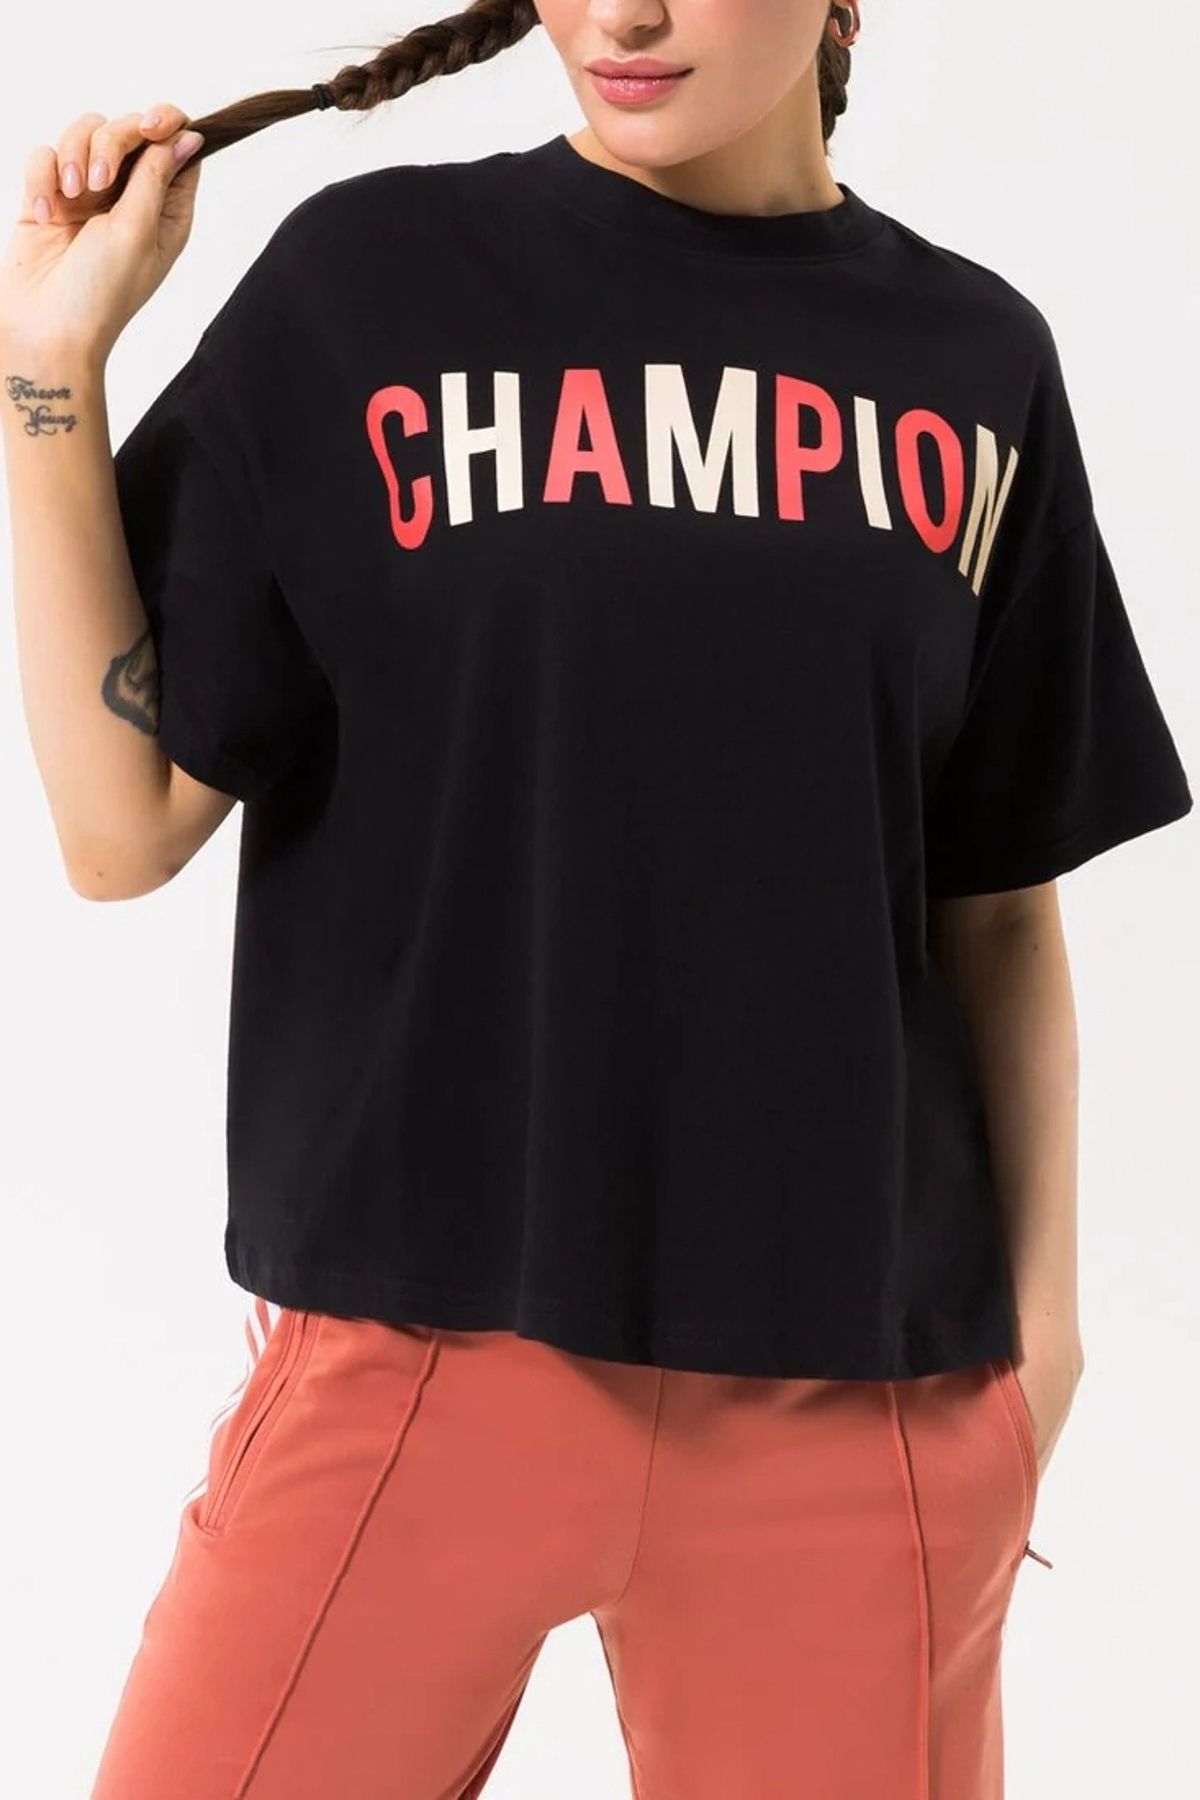 SCHWARZ Damen - Trendyol Champion Mädchen T-Shirt /